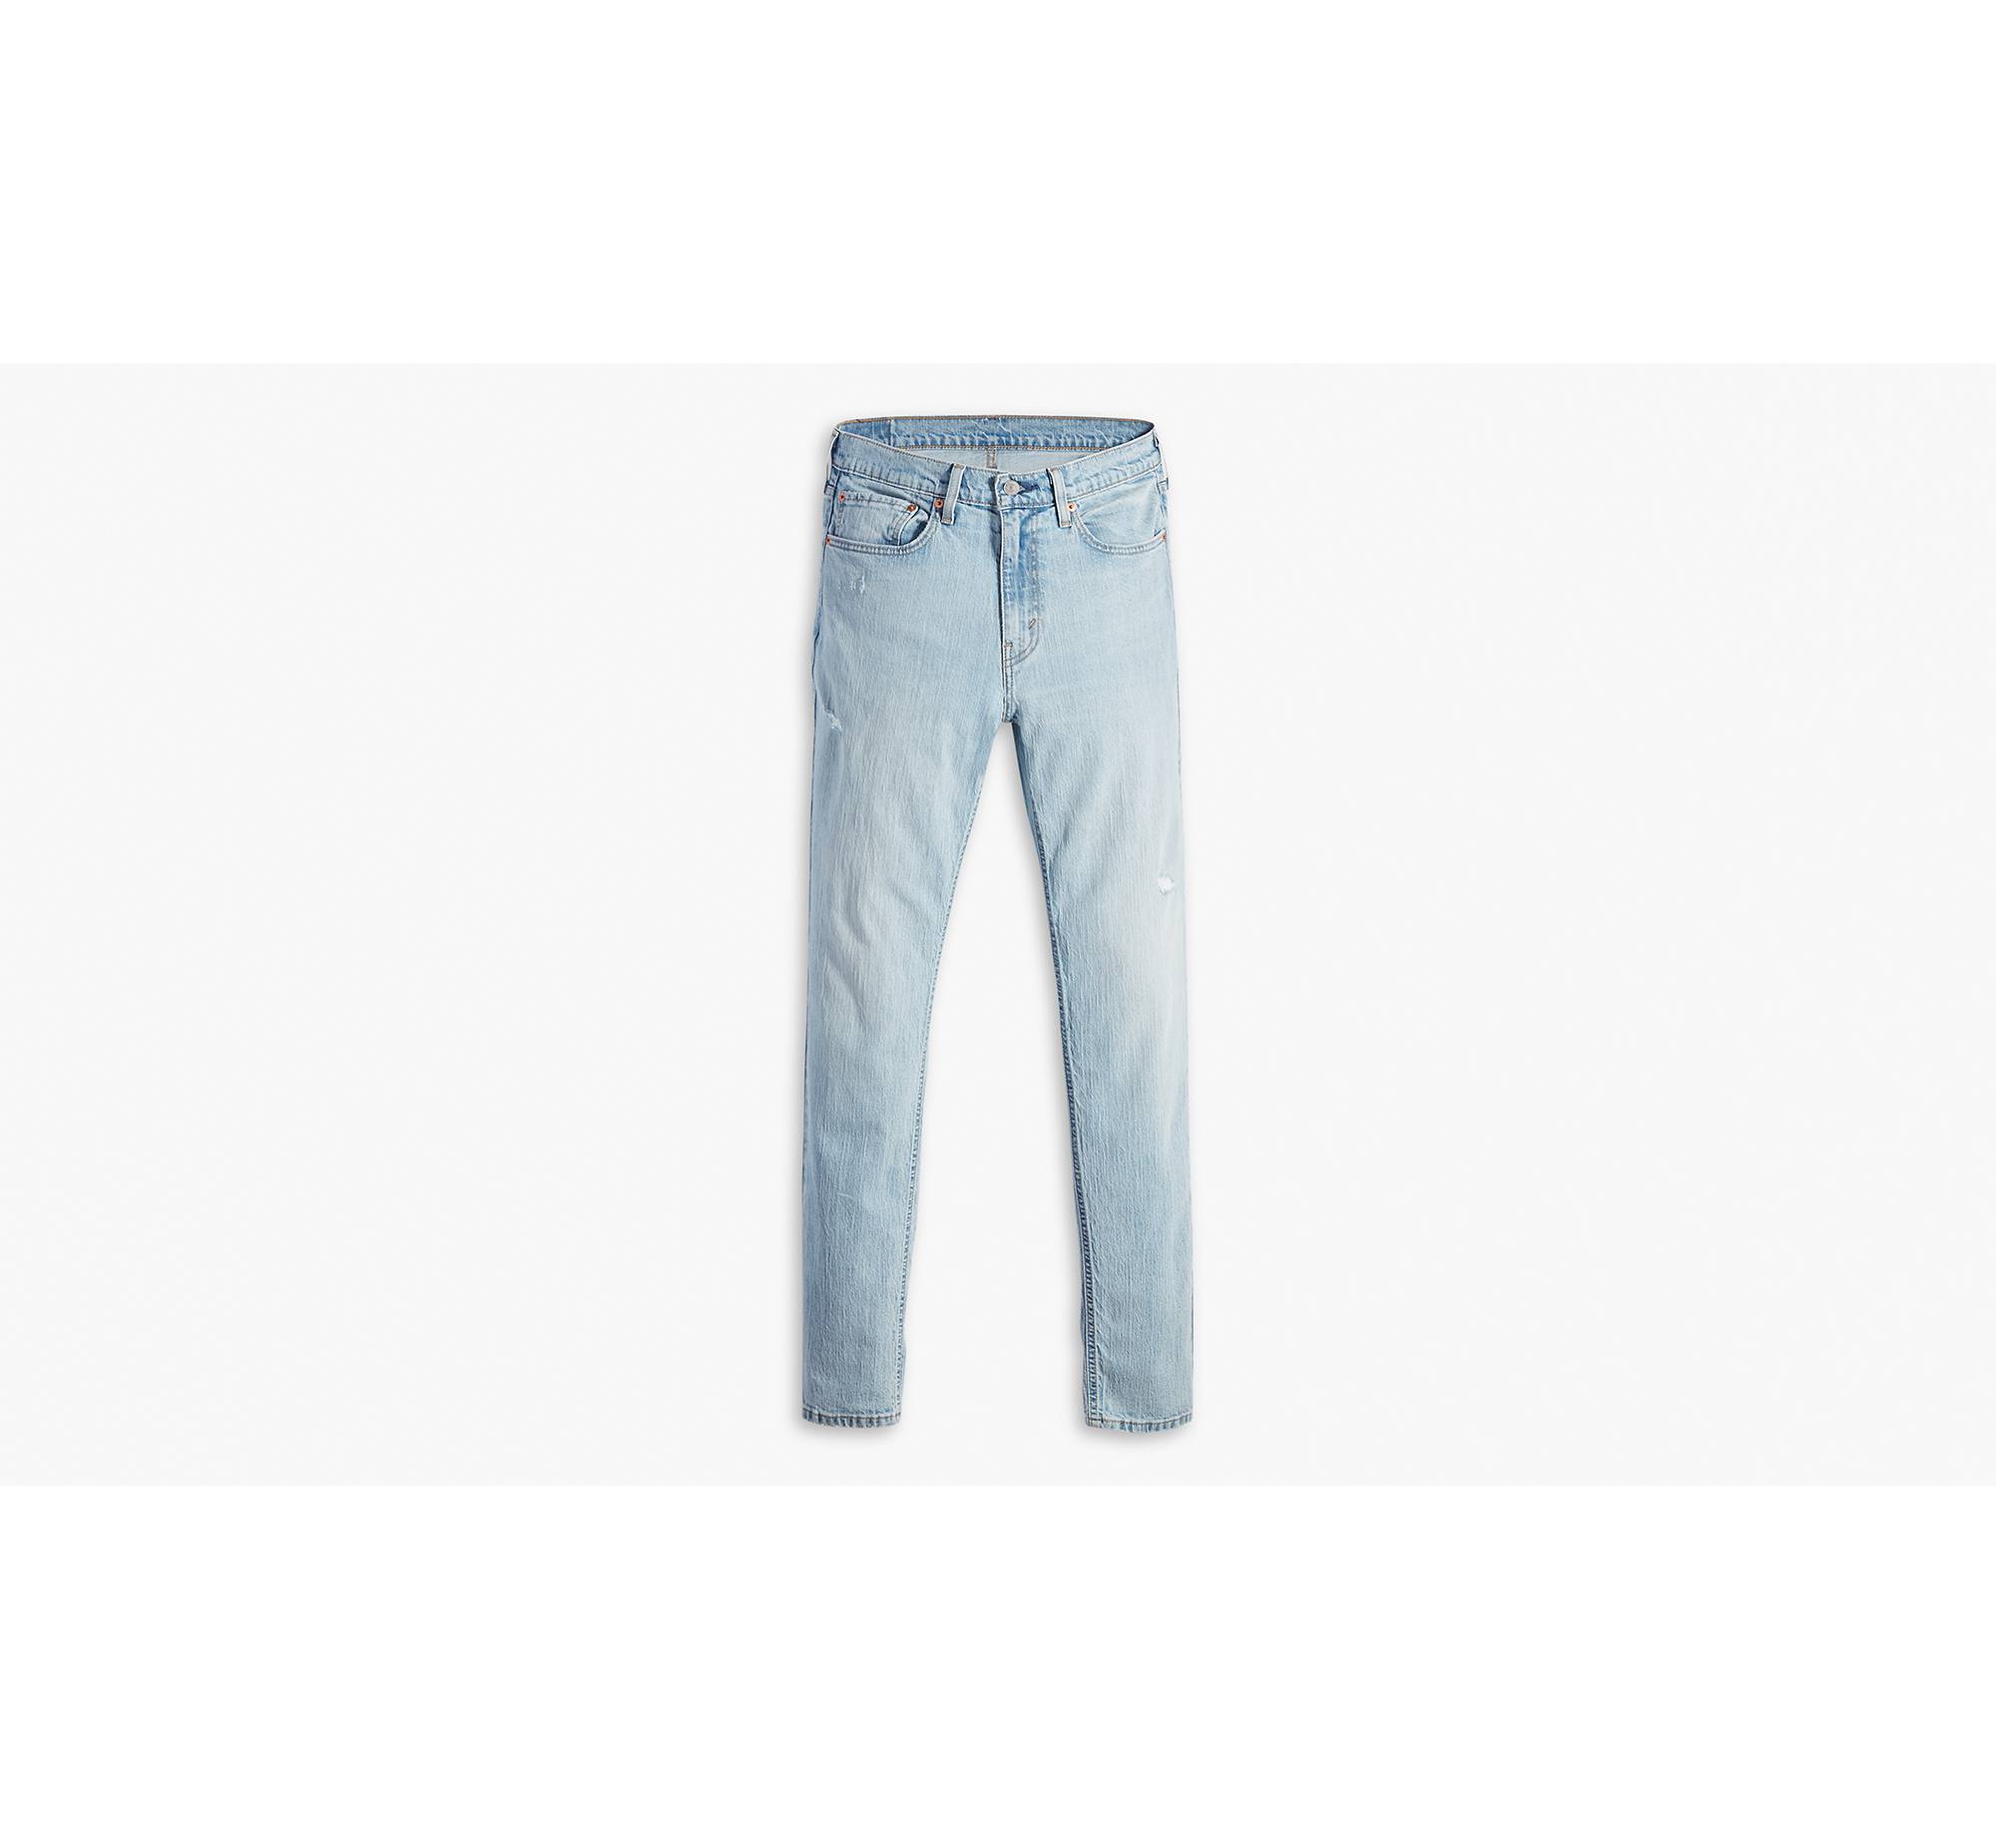 531™ Athletic Slim Fit Men's Jeans - Light Wash | Levi's® US